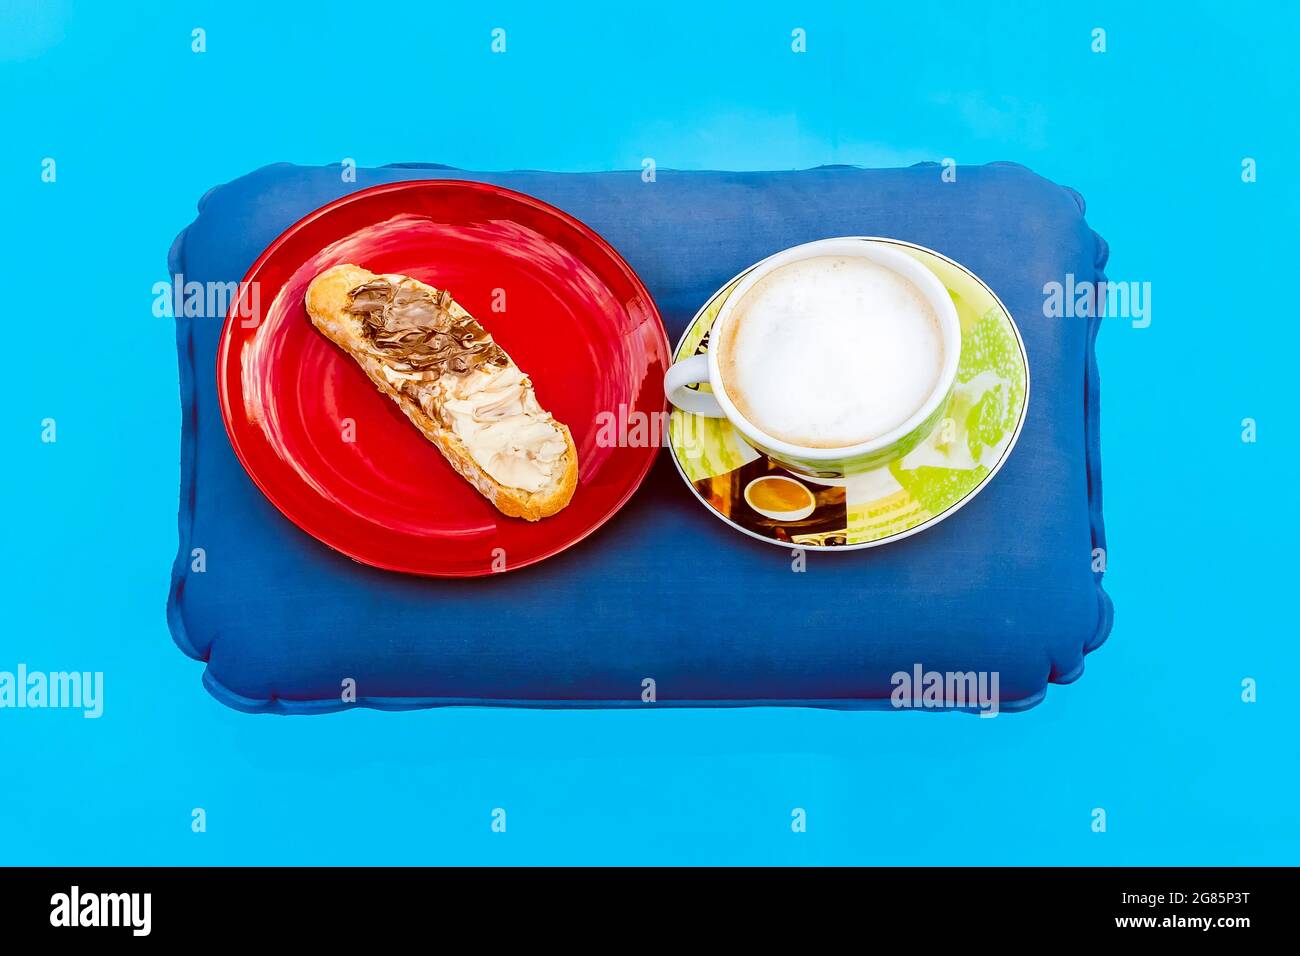 Eine Tasse Cappuccino und ein roter Teller mit einer Scheibe Brot, auf der schwarze und weiße Schokoladencreme auf einem aufblasbaren Kissen aufliegt, das darauf schwimmt Stockfoto